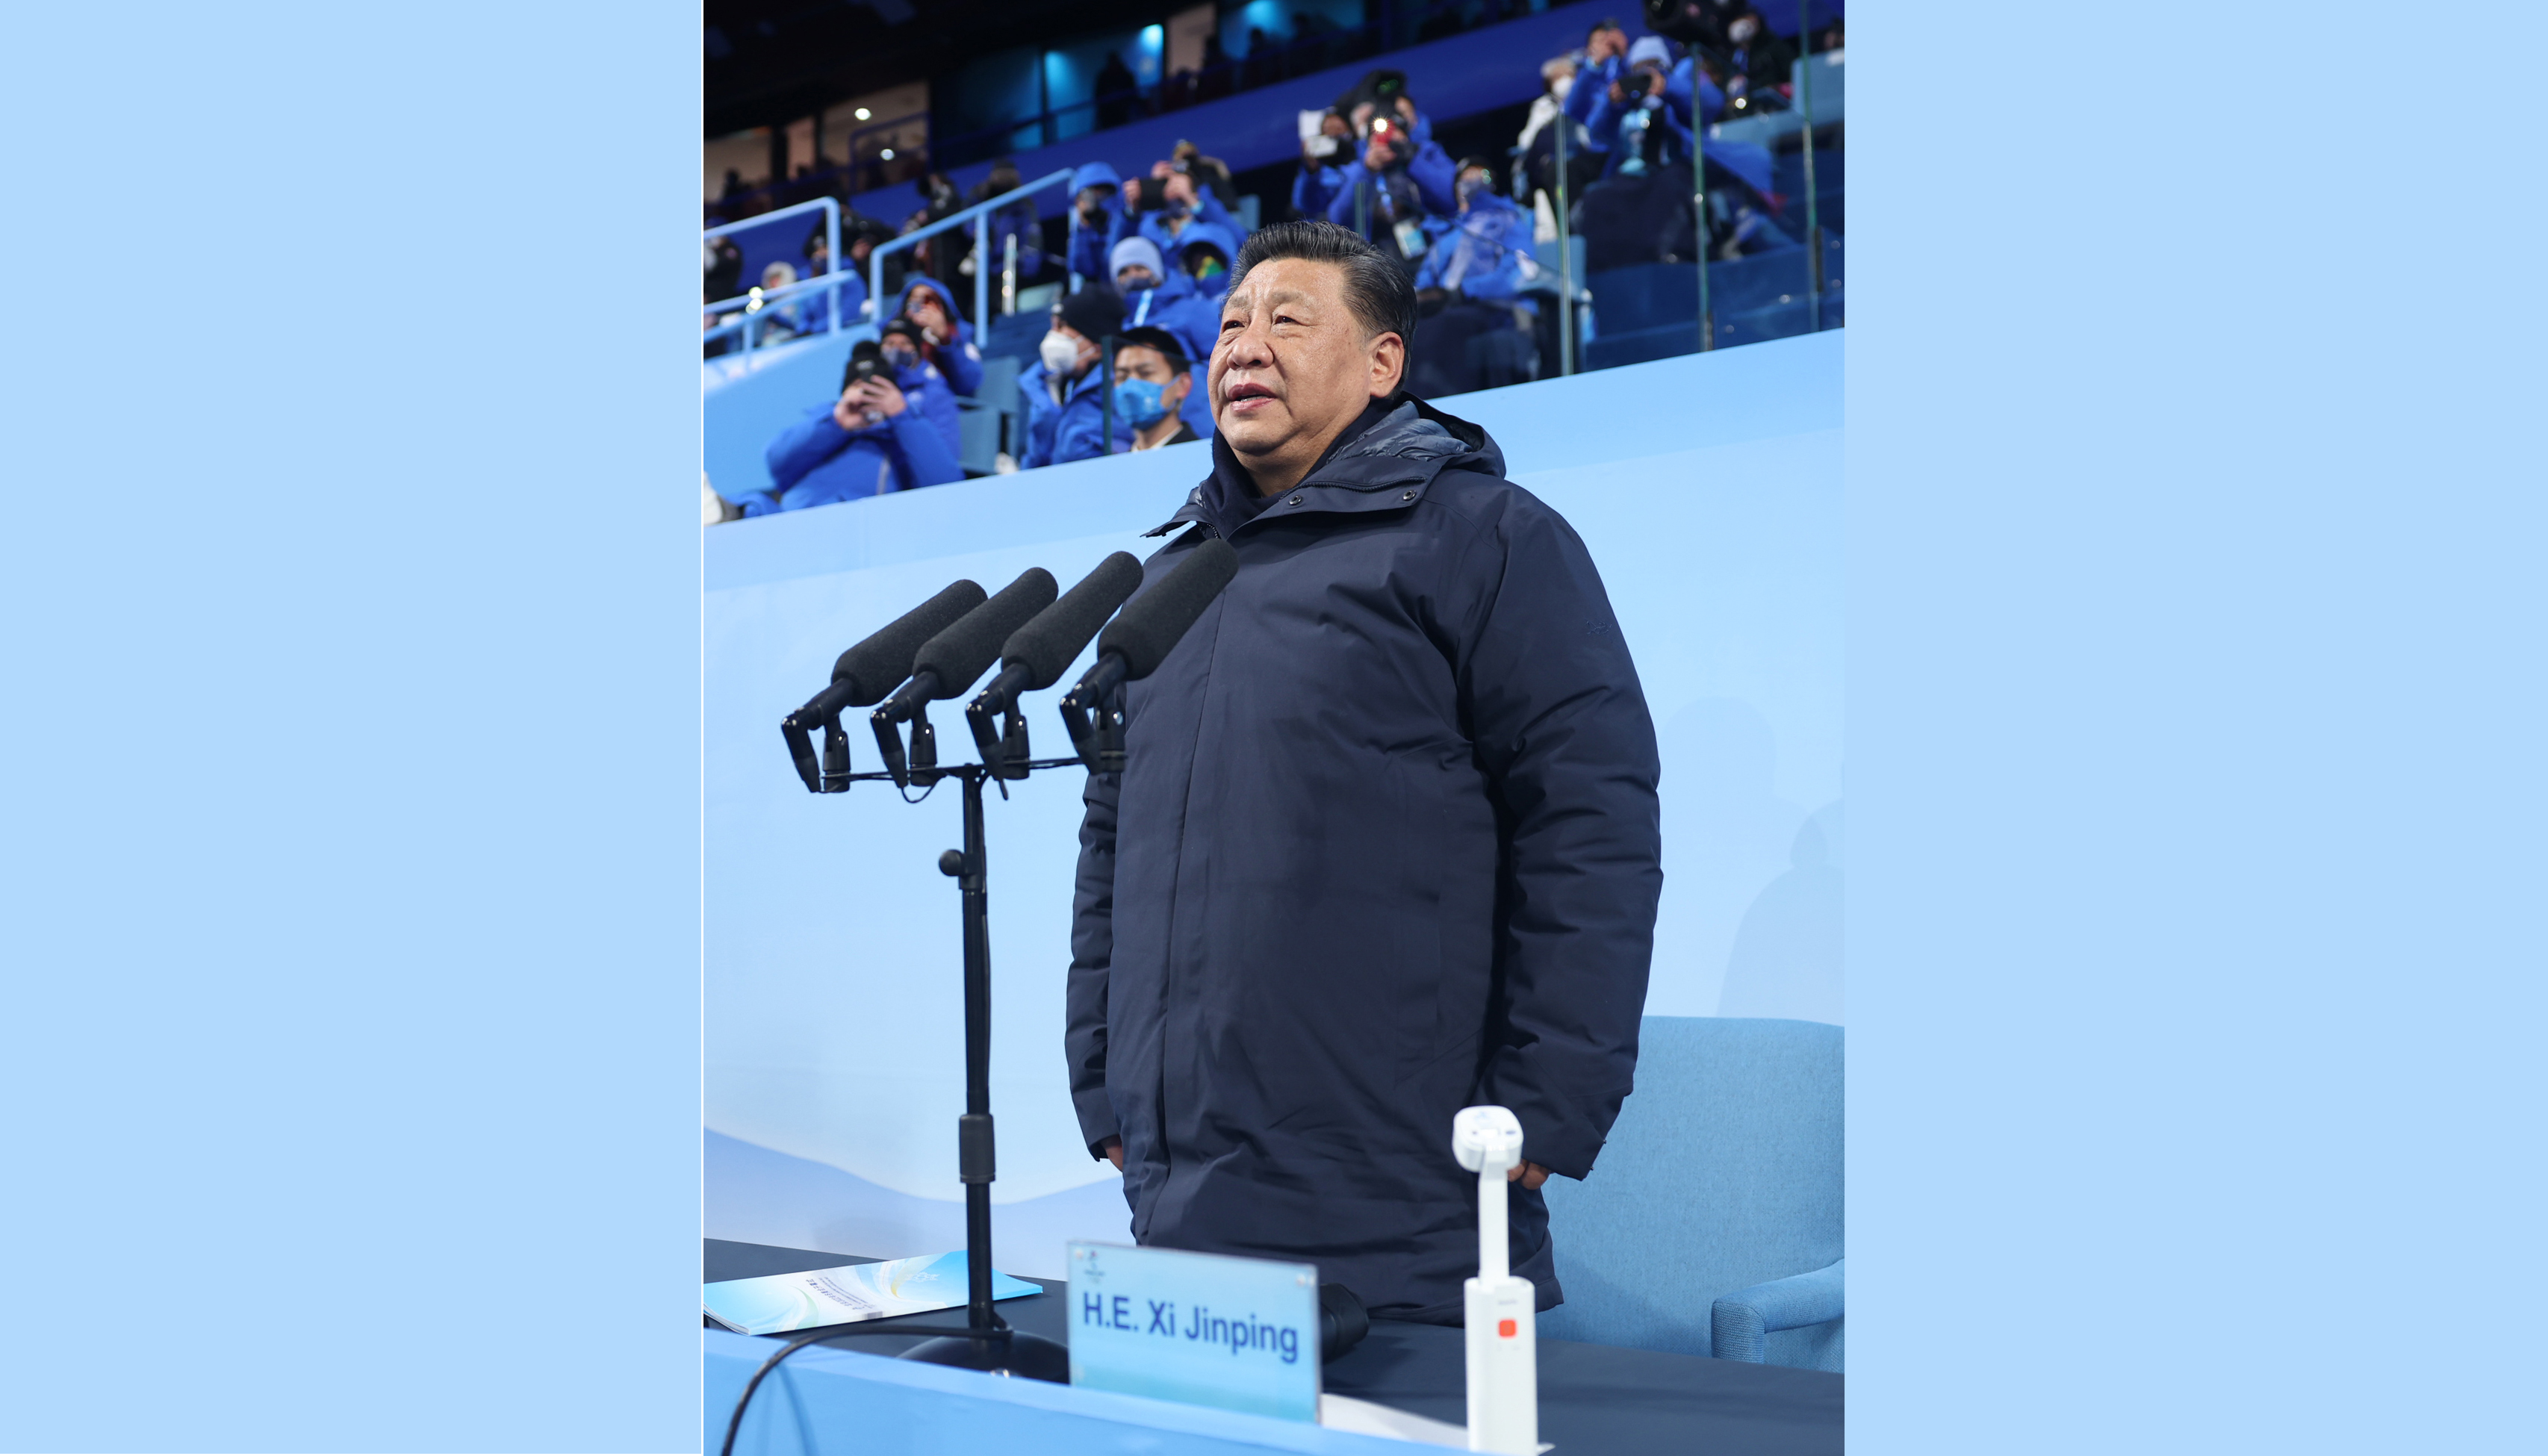 Xi declares open 24th Olympic Winter Games of Beijing